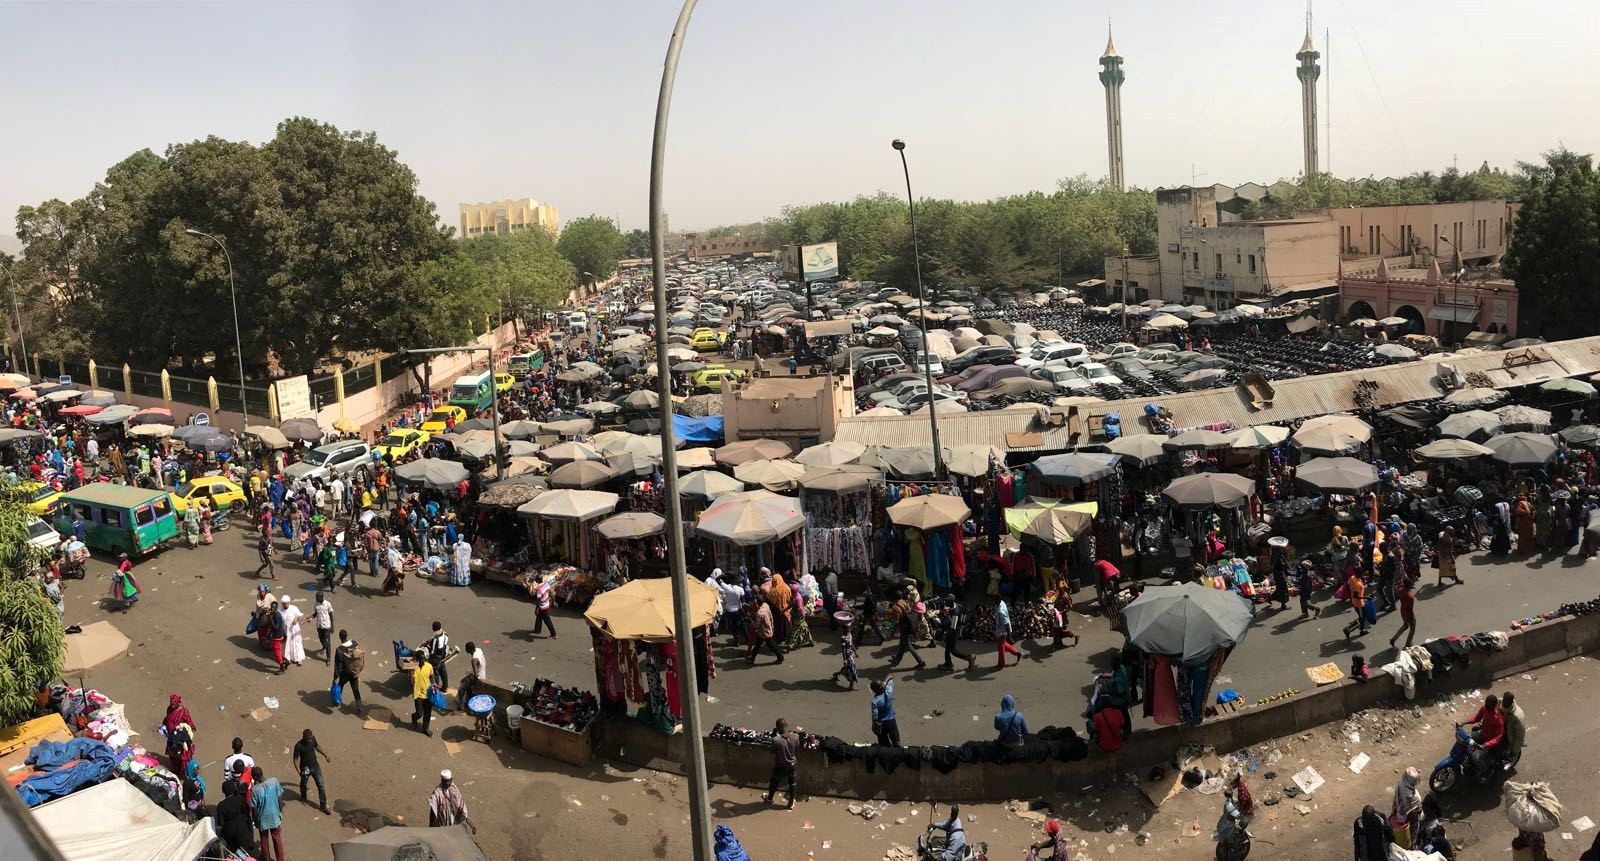 Mercado de Bamako